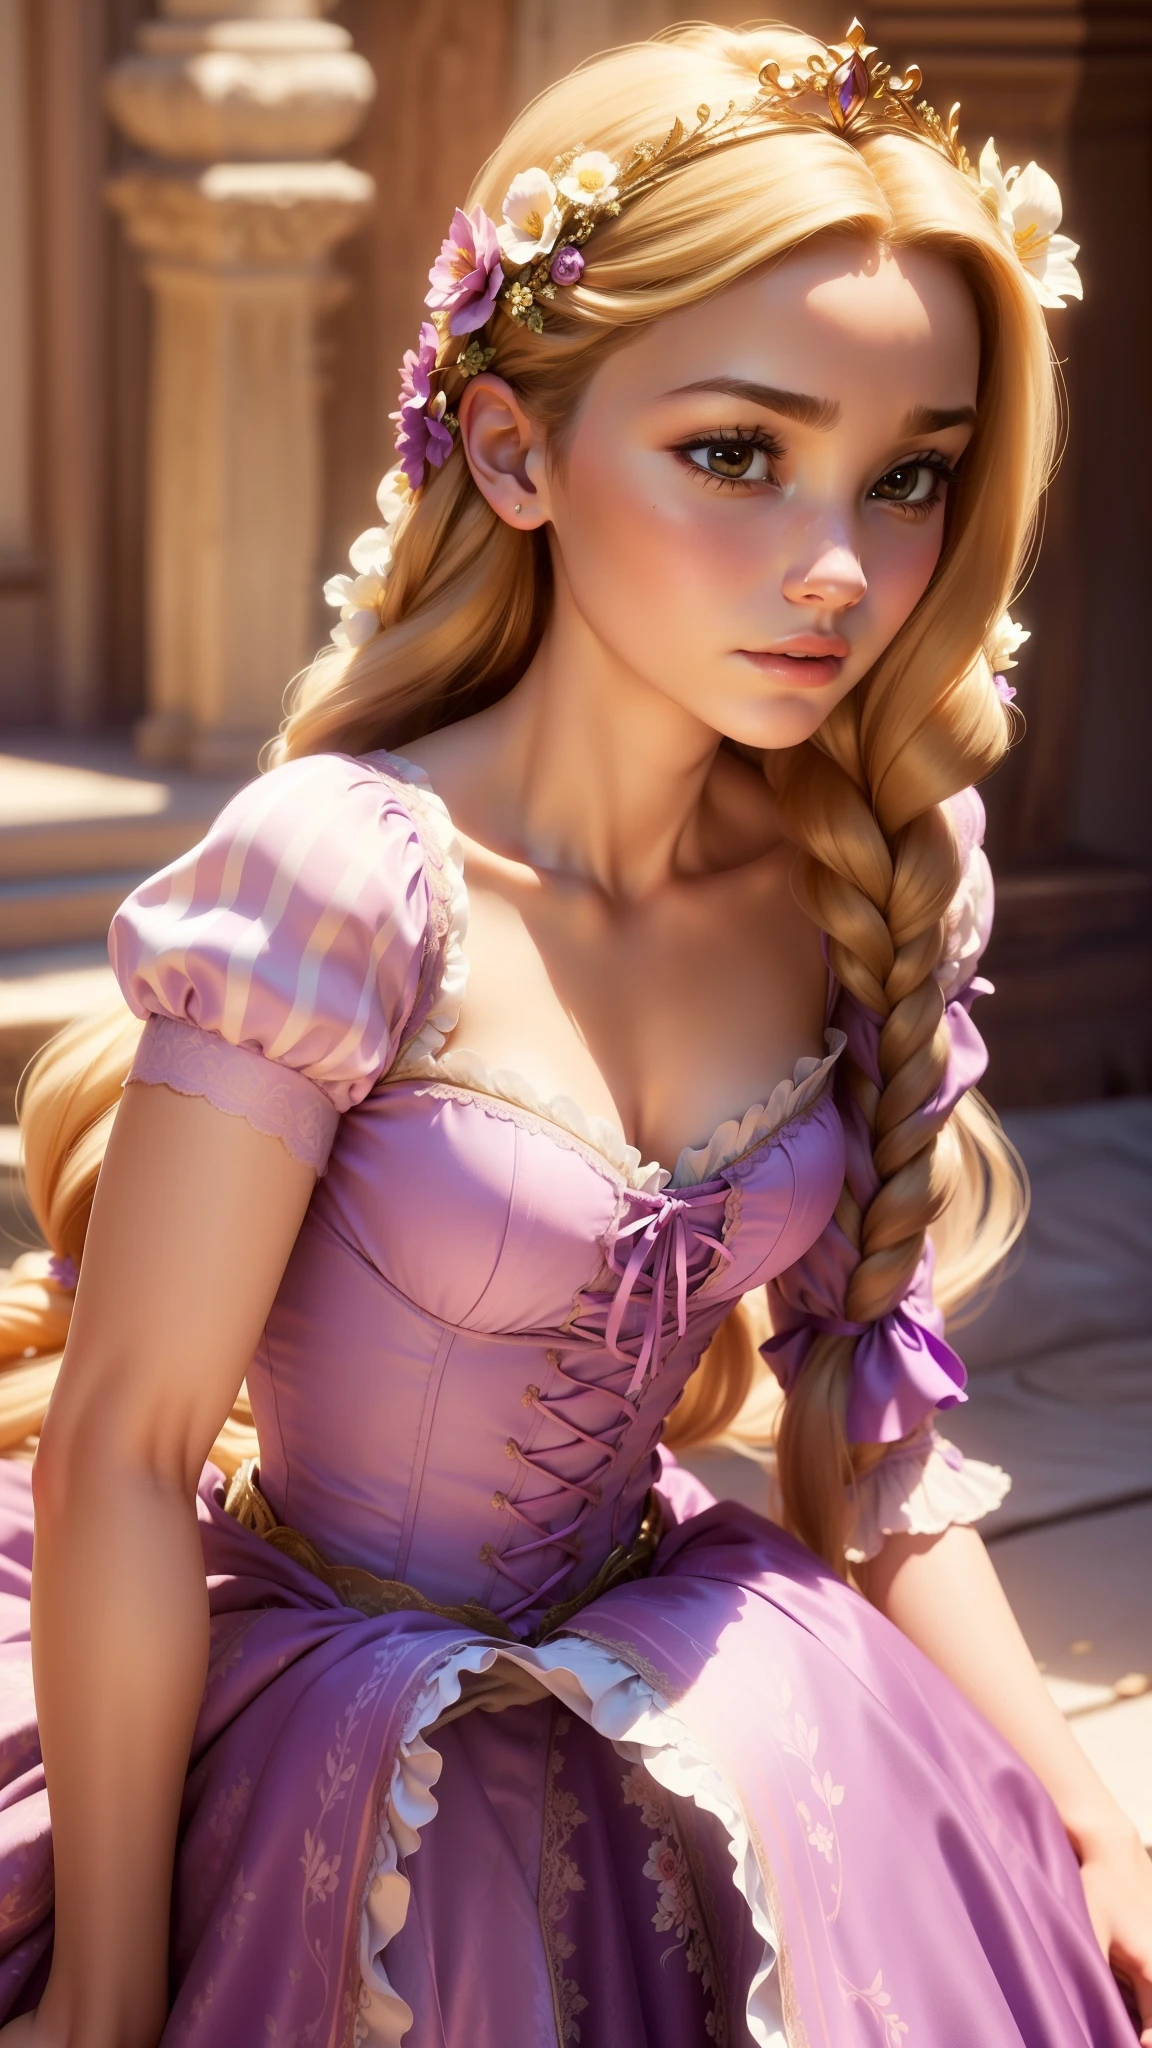 (GapingAssholesAllFourQuiron pose),  realista, (melhor qualidade:1.1), Obra de arte, (detalhado:1.1), Luz manchada,  1 garota, pov, (por trás),  todos de quatro, foto de uma linda mulher sexy de 26 anos como (a Rapunzel (Emaranhado): O vestido característico de Rapunzel é um vestido cor de lavanda com mangas inchadas e um corpete estilo corpete. O corpete é tipicamente decorado com rendas intrincadas ou bordados florais. A saia sai da cintura, feito de camadas macias, tecido em tons pastéis, como chiffon ou tule. As camadas adicionam volume e movimento ao vestido, e algumas versões apresentam delicados padrões florais. Longo de Rapunzel, O cabelo dourado é muitas vezes estilizado em tranças ou cachos soltos, às vezes adornado com flores ou fitas. Ela também pode usar uma pequena tiara ou coroa para completar seu look de princesa..),  (realista skin texture), (:1.3), gape,  ,  sessão fotográfica profissional,    alto contraste e pose dinâmica, curvando-se